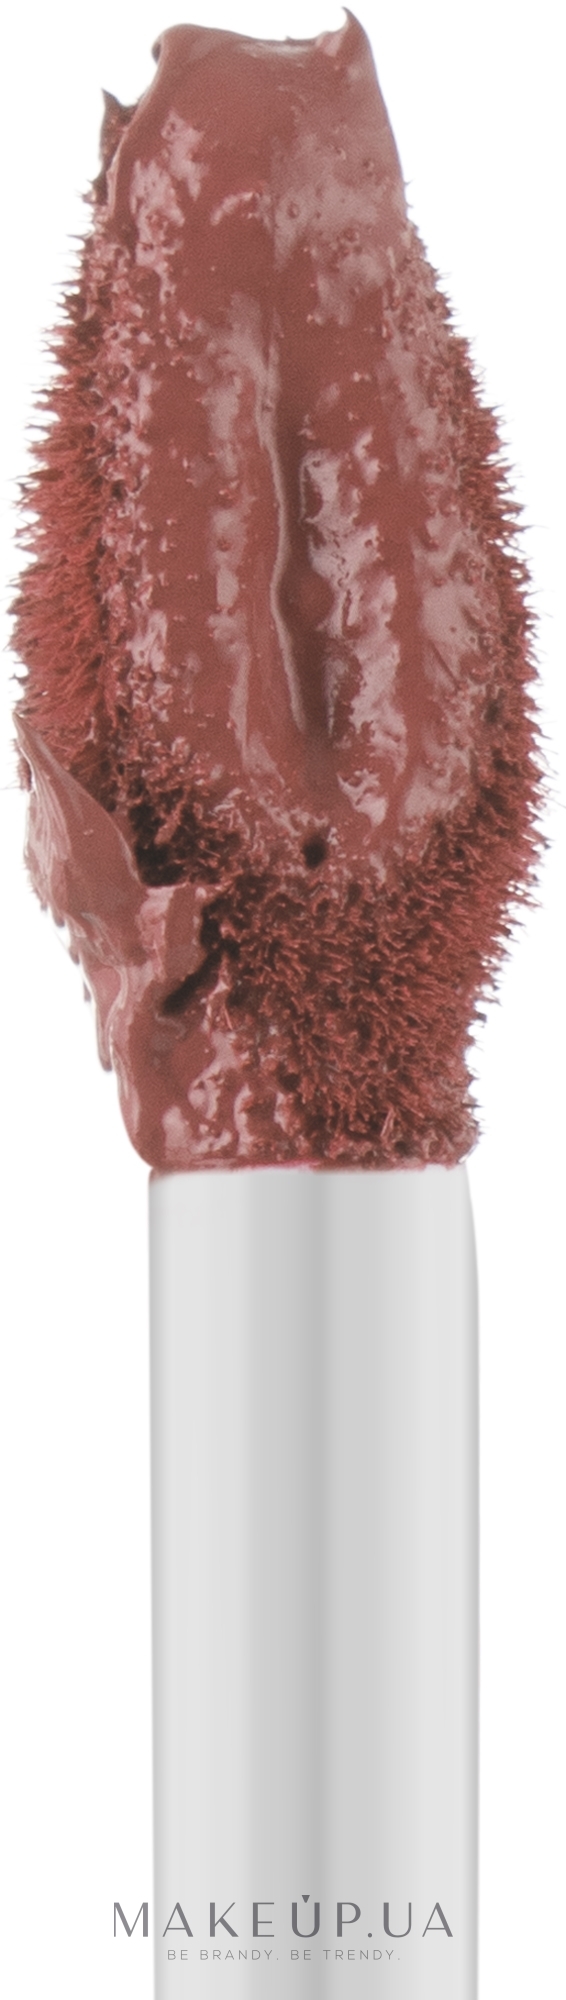 Жидкая матовая помада для губ - Alix Avien Matte Liquid Lipstick — фото 505 - Nude Pink